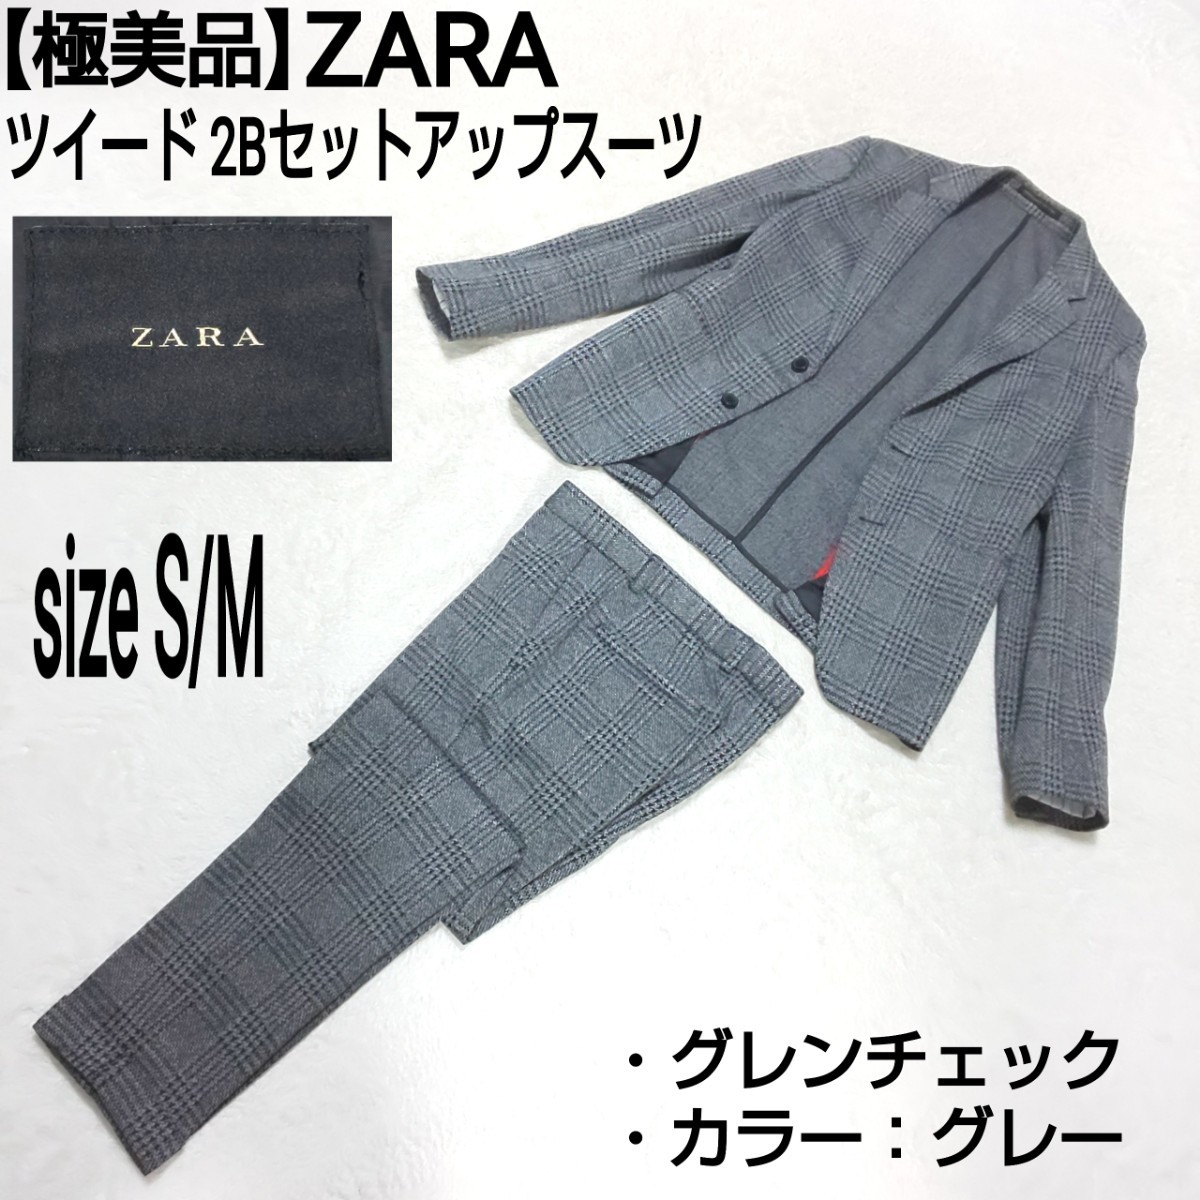 【極美品】ZARA ザラ ツイード 2Bセットアップスーツ テーラードジャケット ブレザー ノータックパンツ グレンチェック グレー S/M メンズ